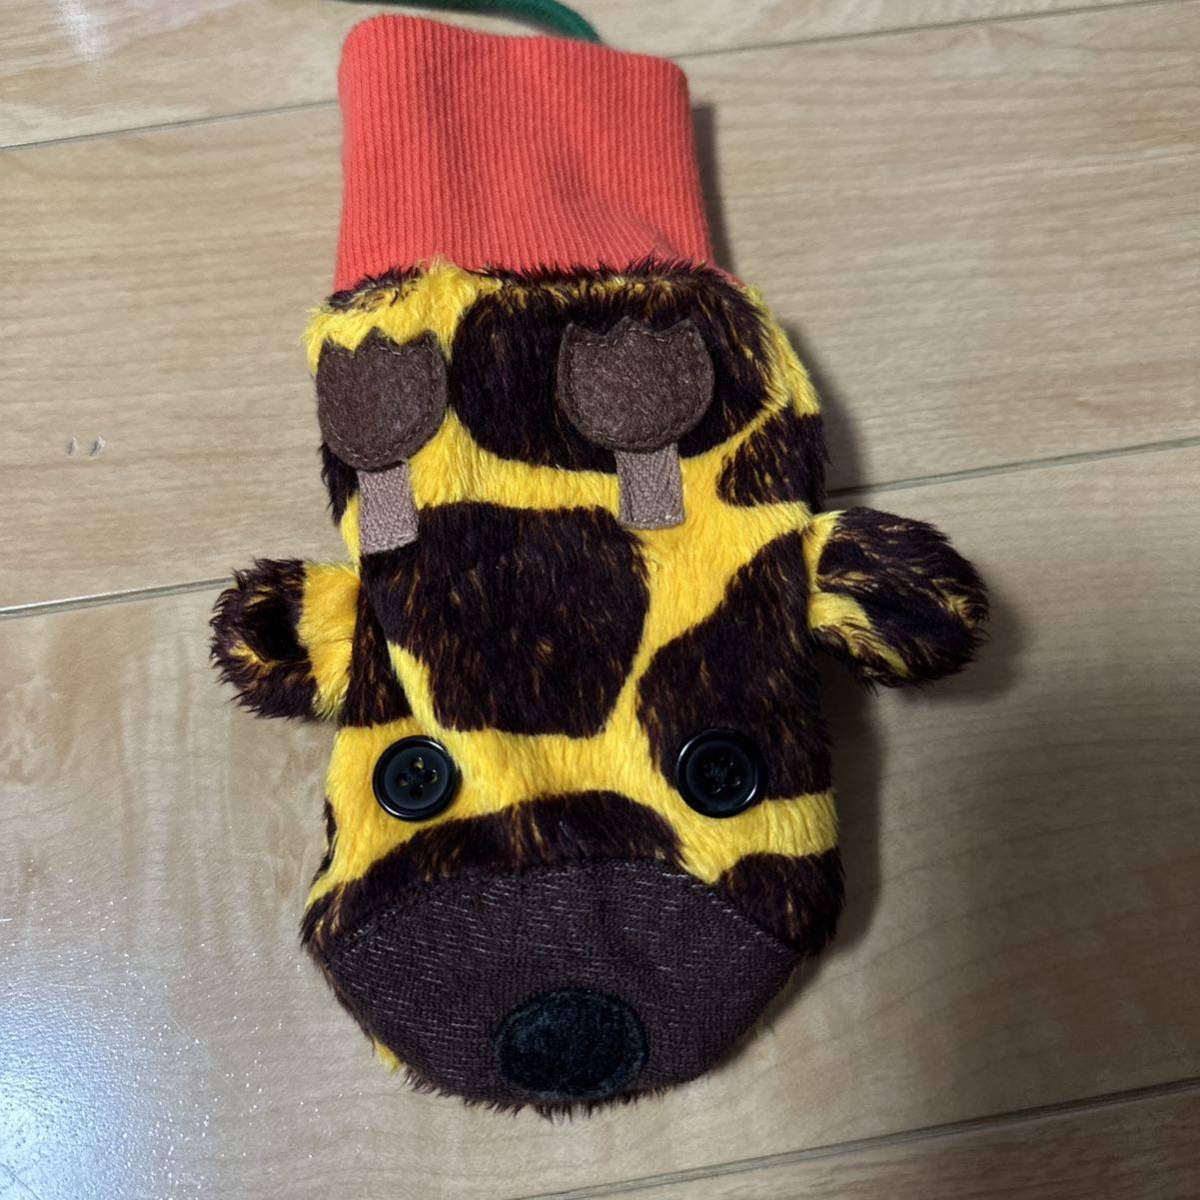  новый товар Mill Moco demo ko жираф рисунок перчатки MIL DE BERRY Mill te Berry 3045 иен Boo Foo Woo JAMg ковер la популярный полная распродажа размер цвет отличается есть [S желтый ]